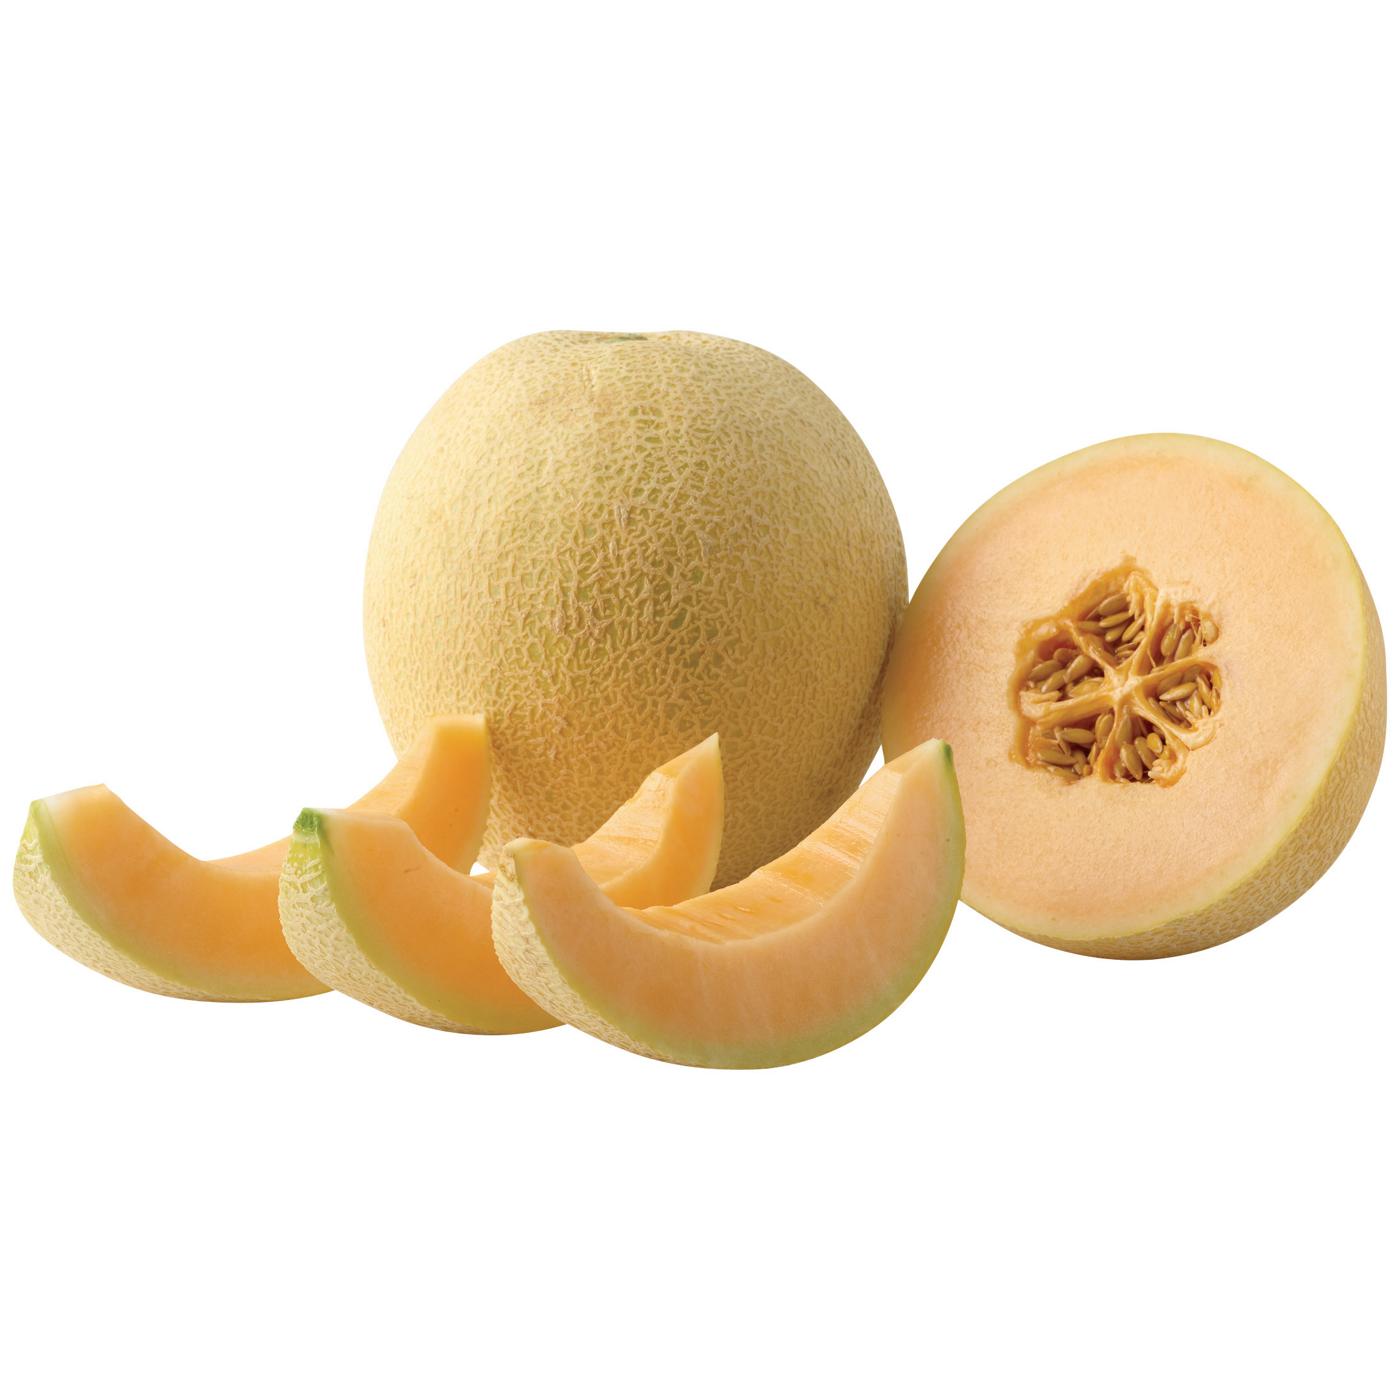 H-E-B Dream Melon - Sugar Rush; image 2 of 2